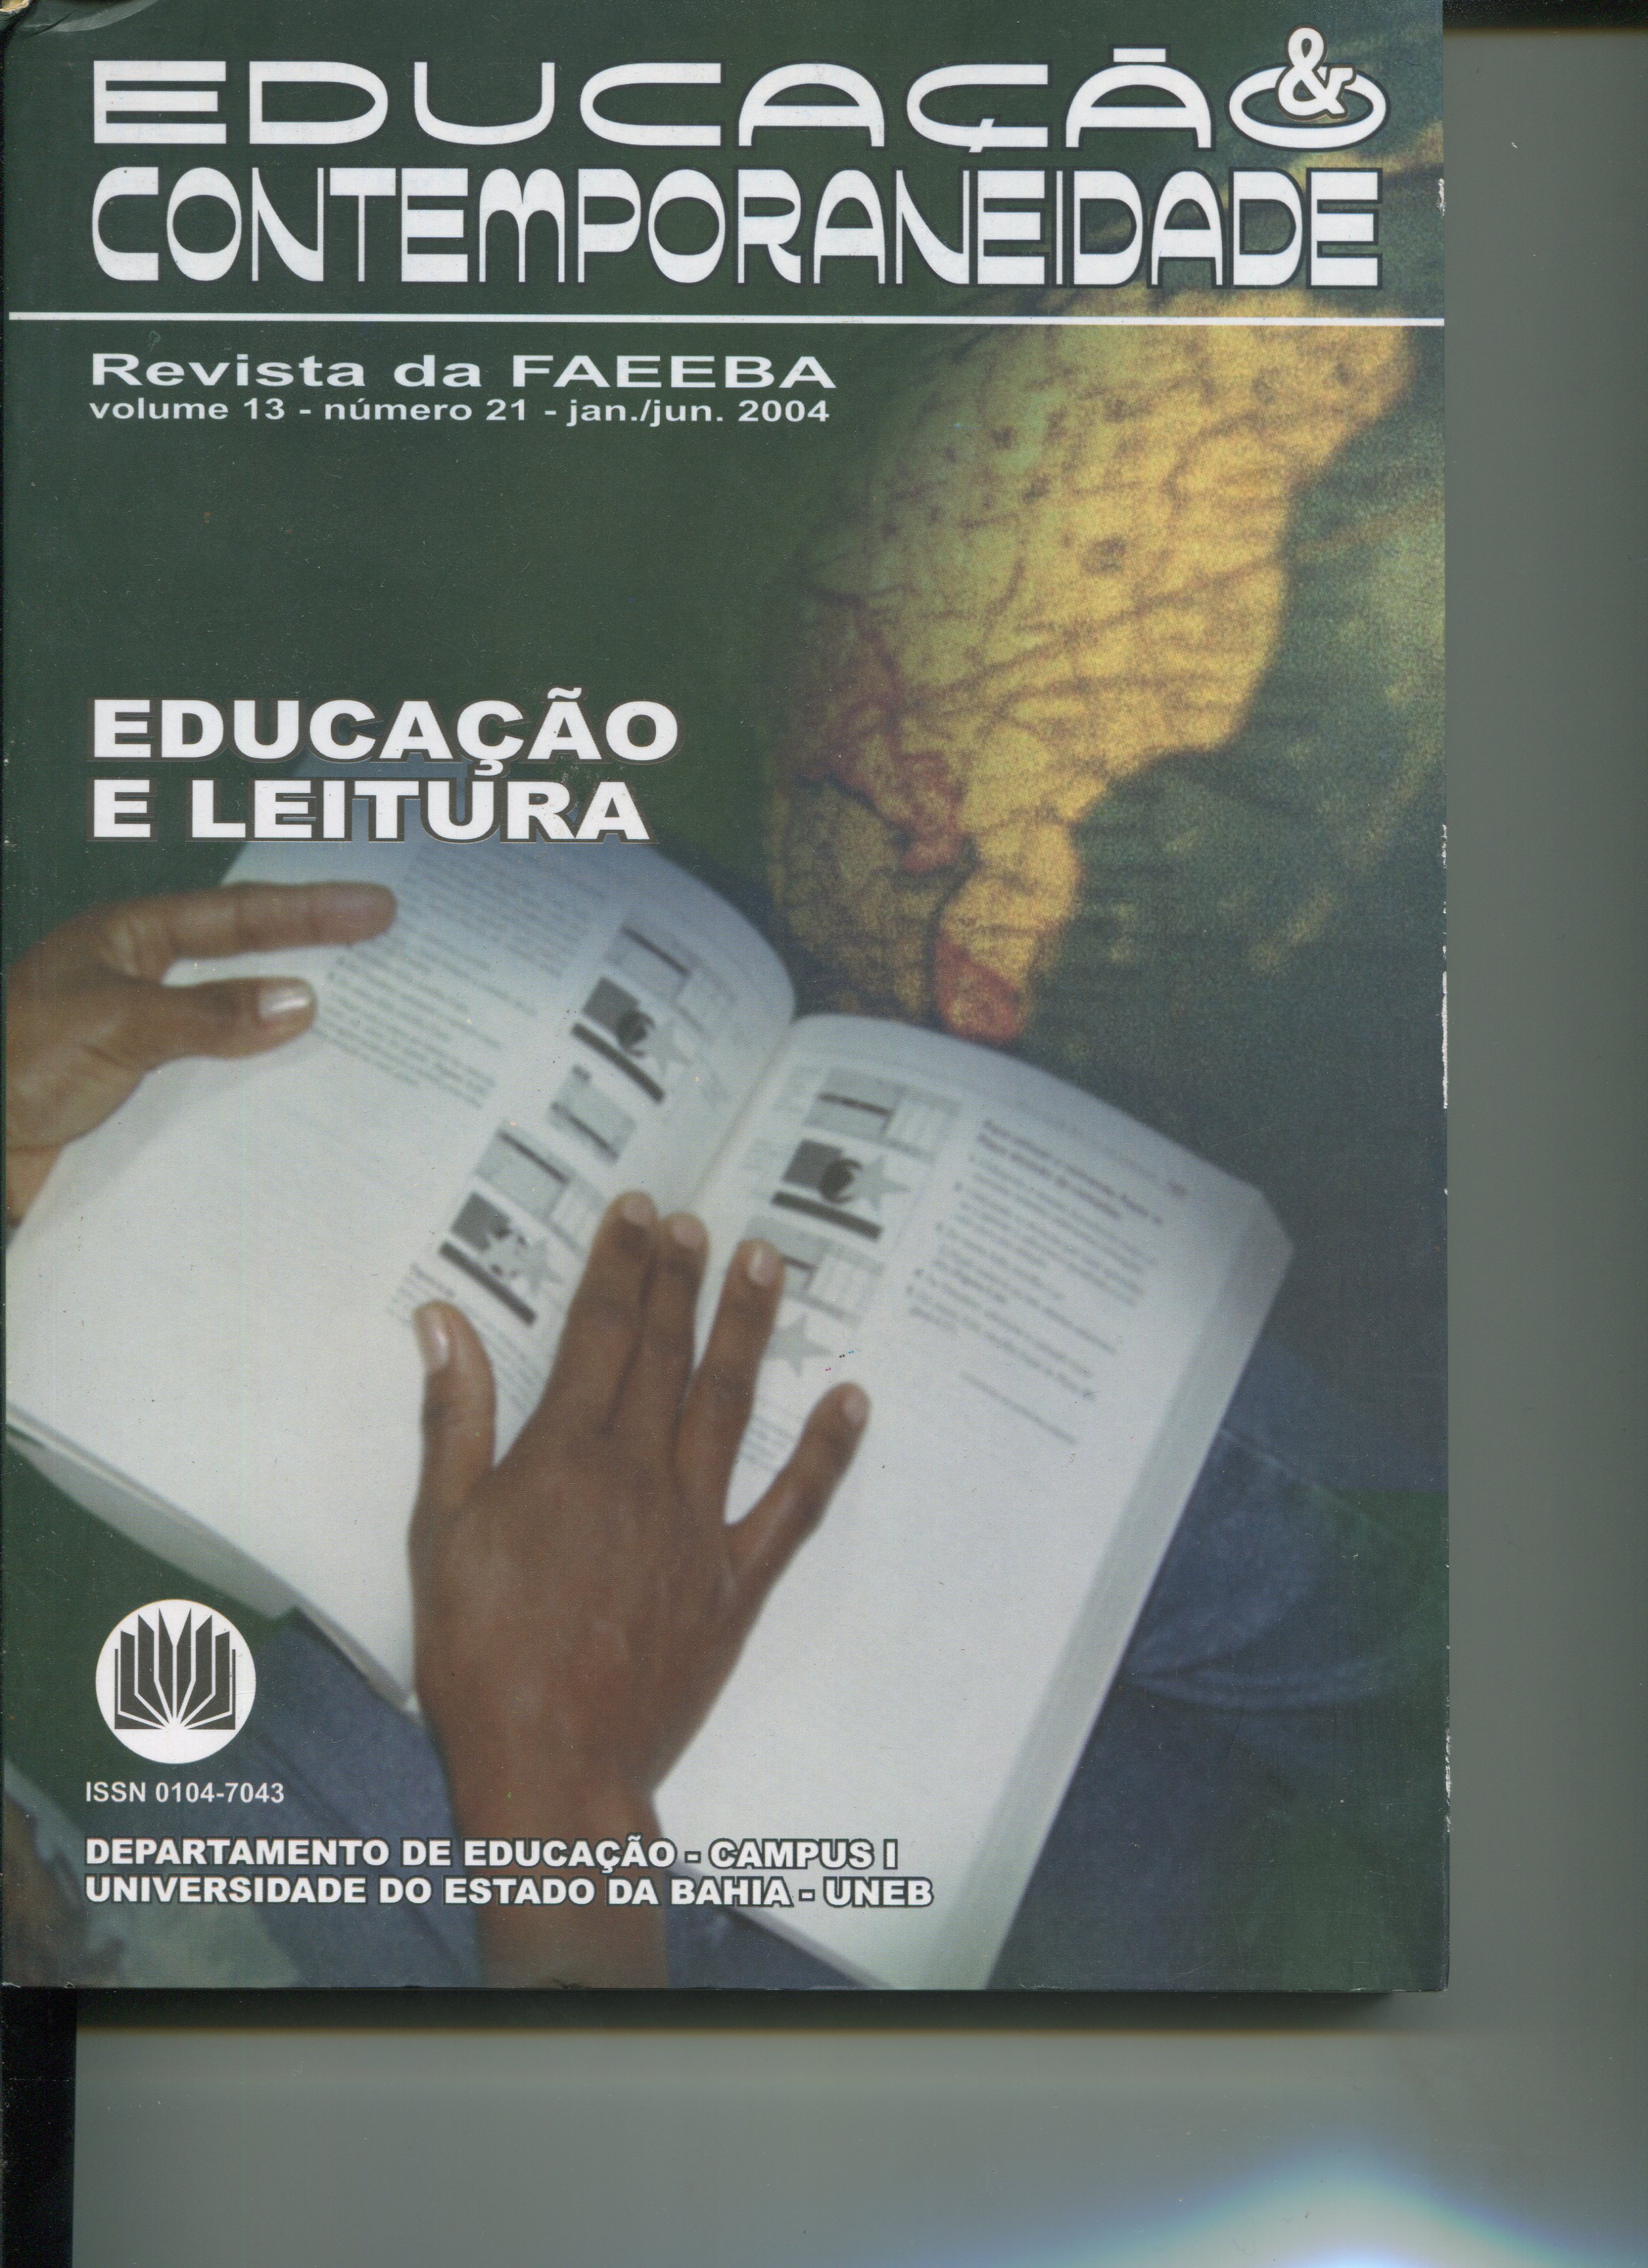 					Visualizar v. 13 n. 21 (2004): Revista da FAEEBA. Educação e Contemporaneidade
				